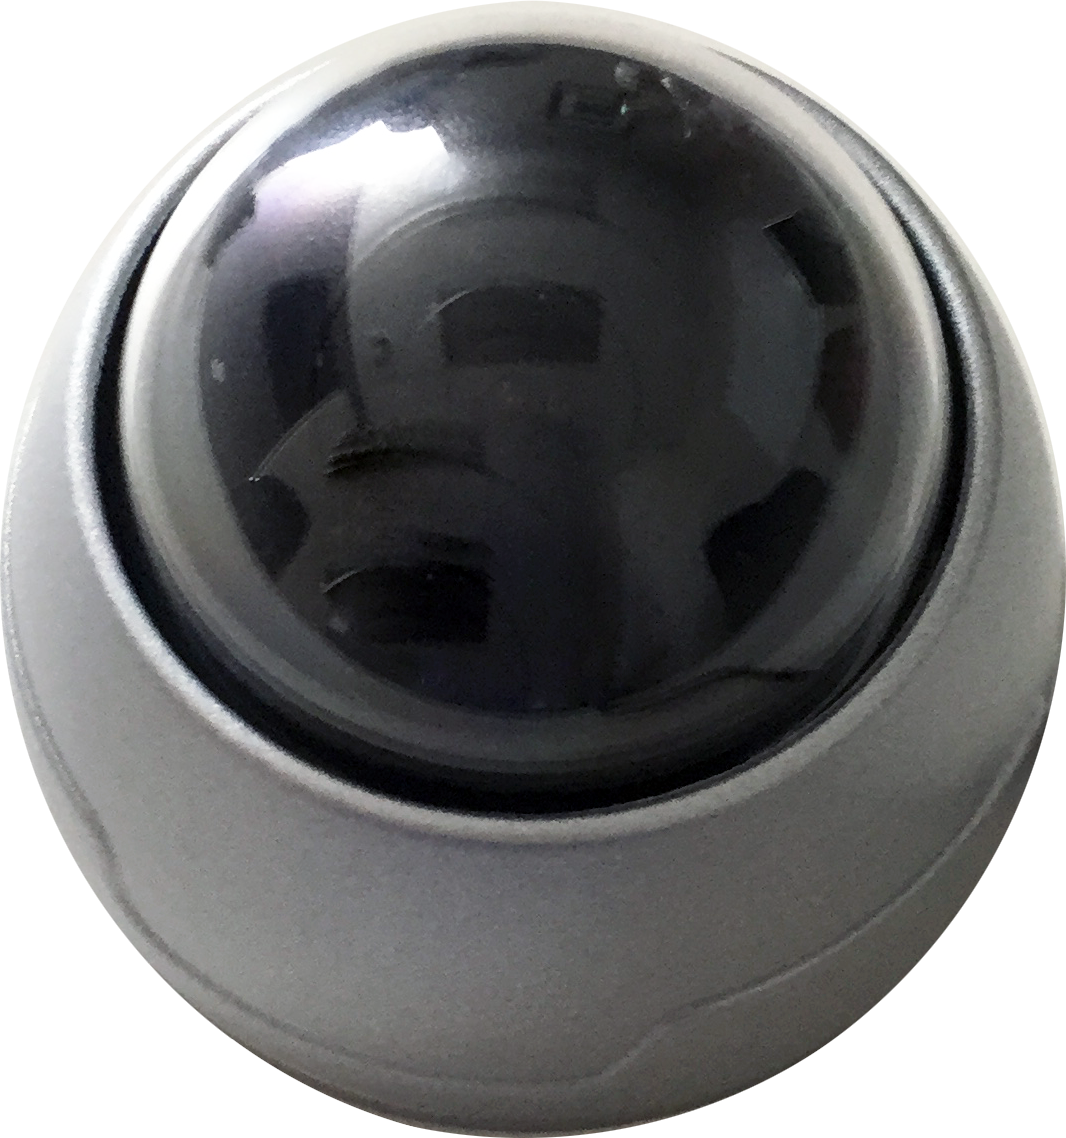 Smart Witness SVA028-S CMOS Dome Camera